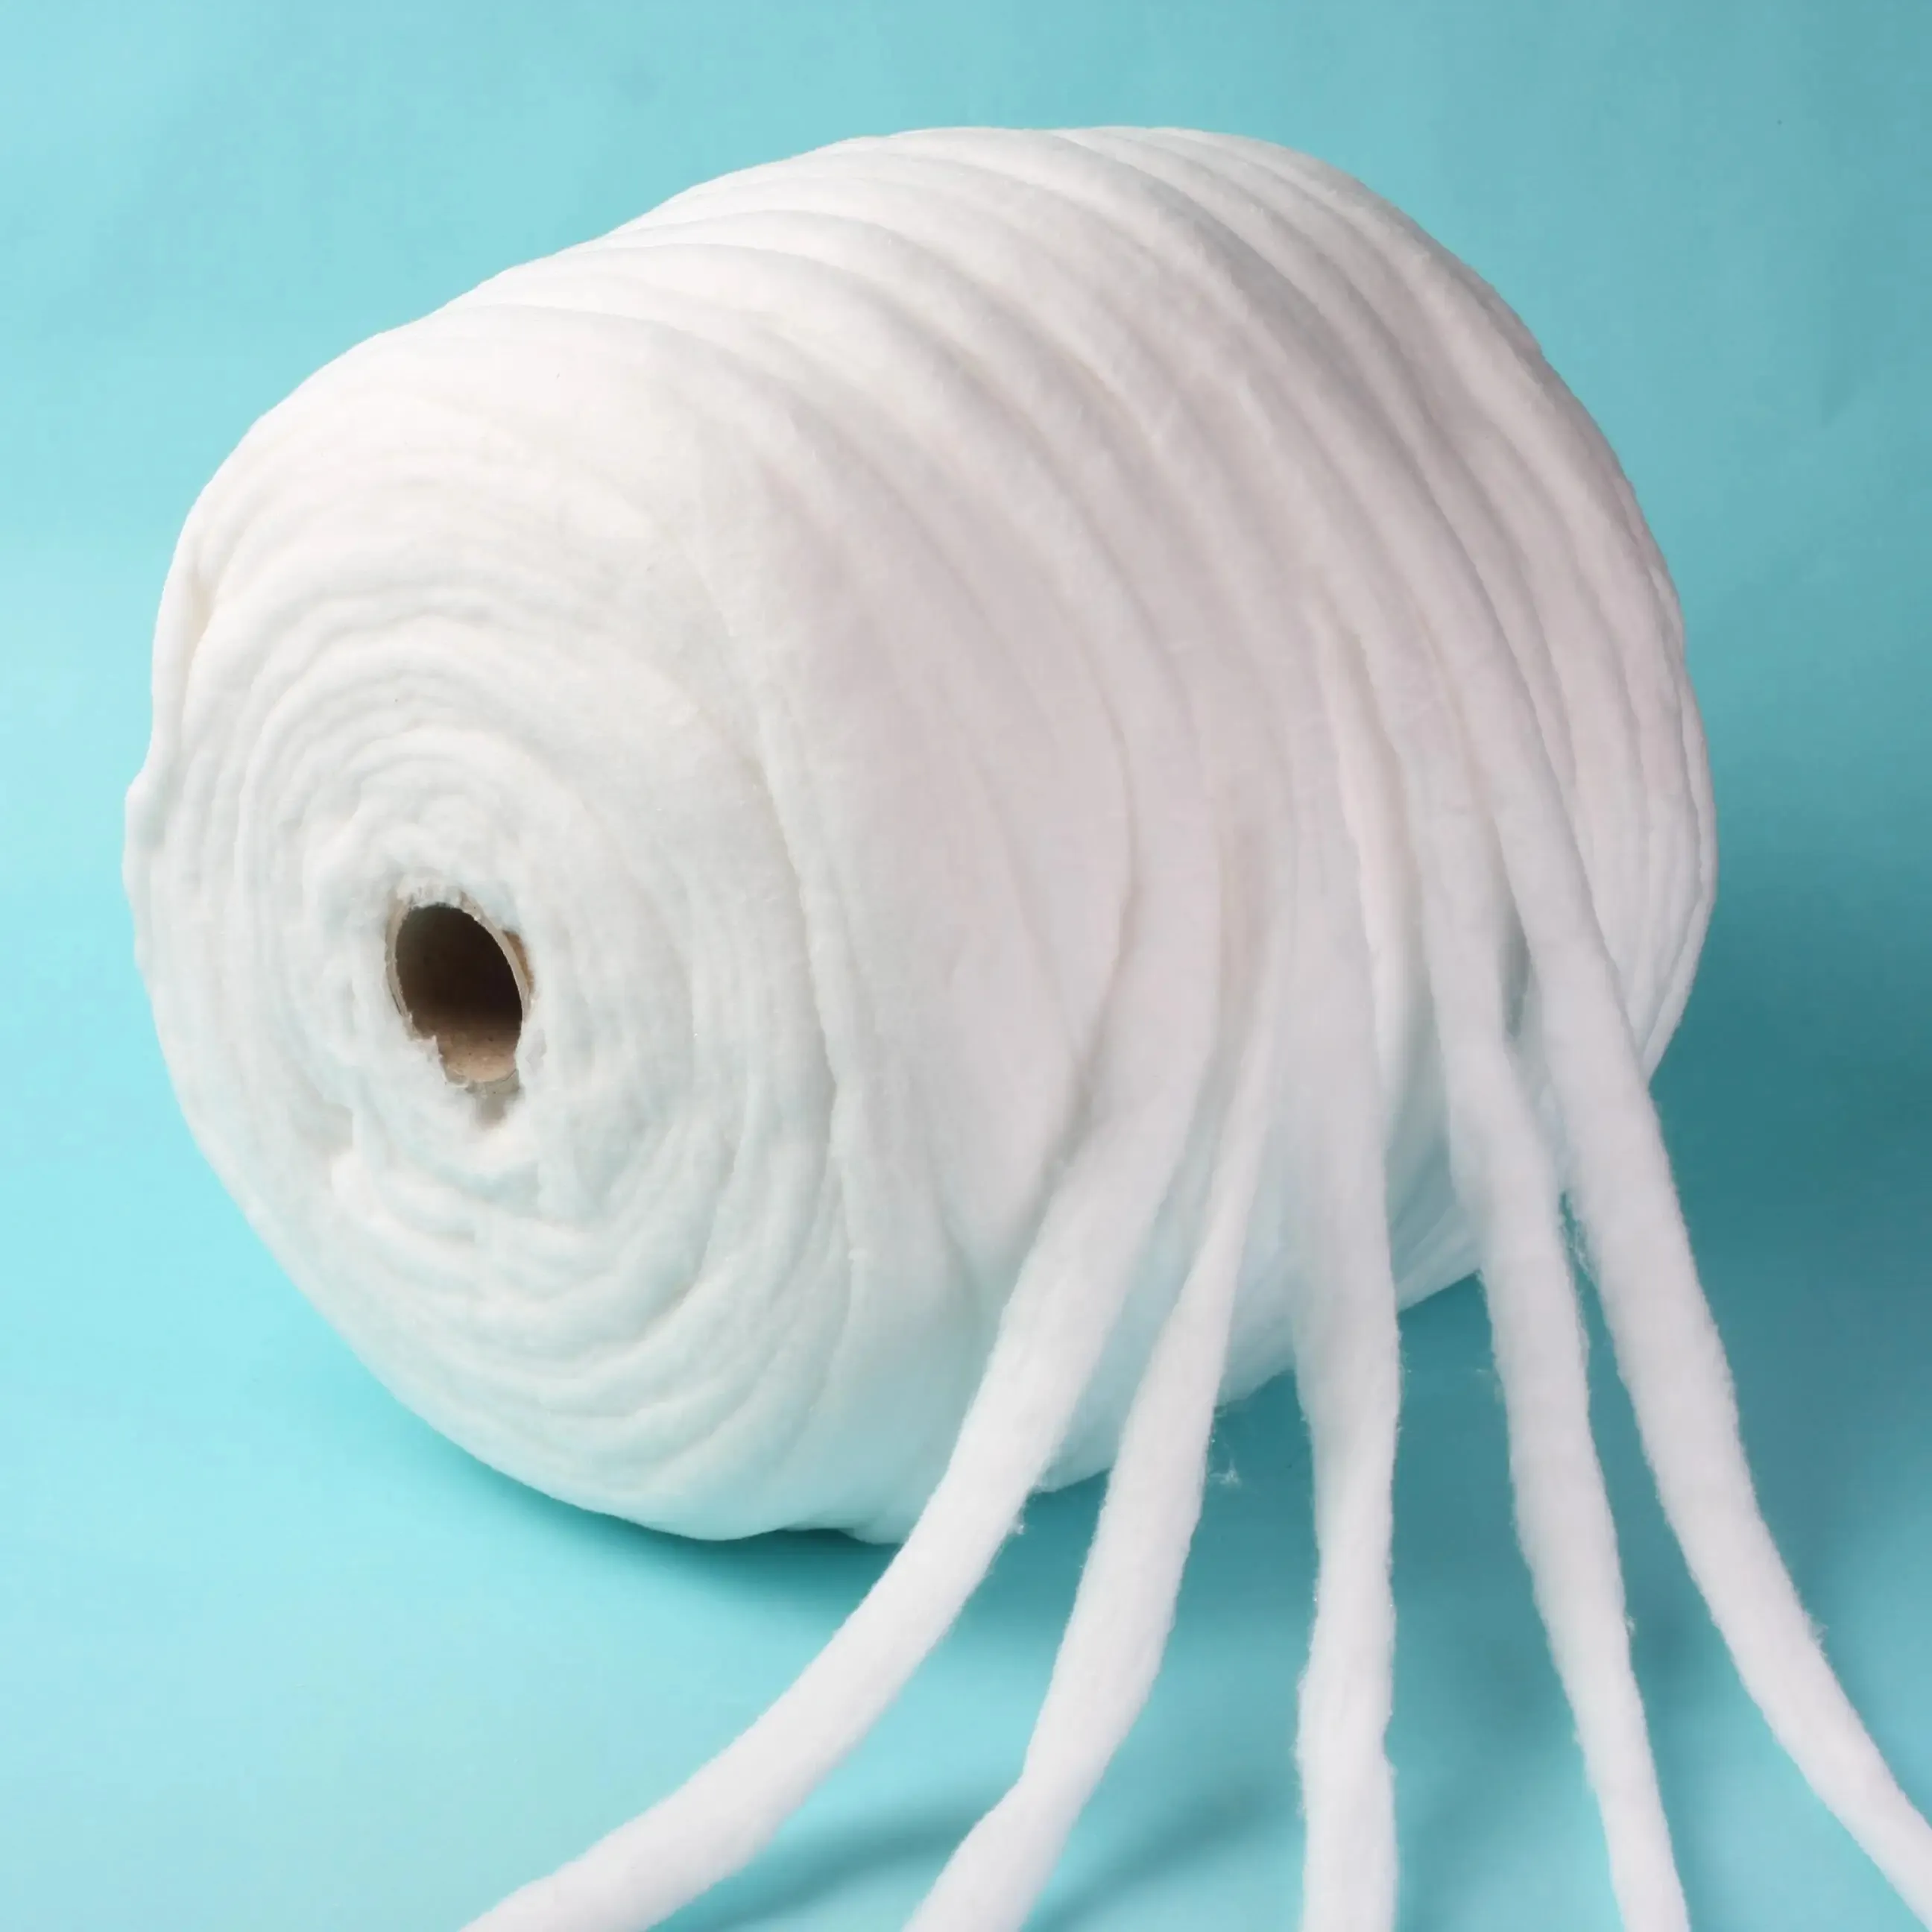 Rolo de lã de algodão absorvente para cuidados pessoais de algodão laminado a quente